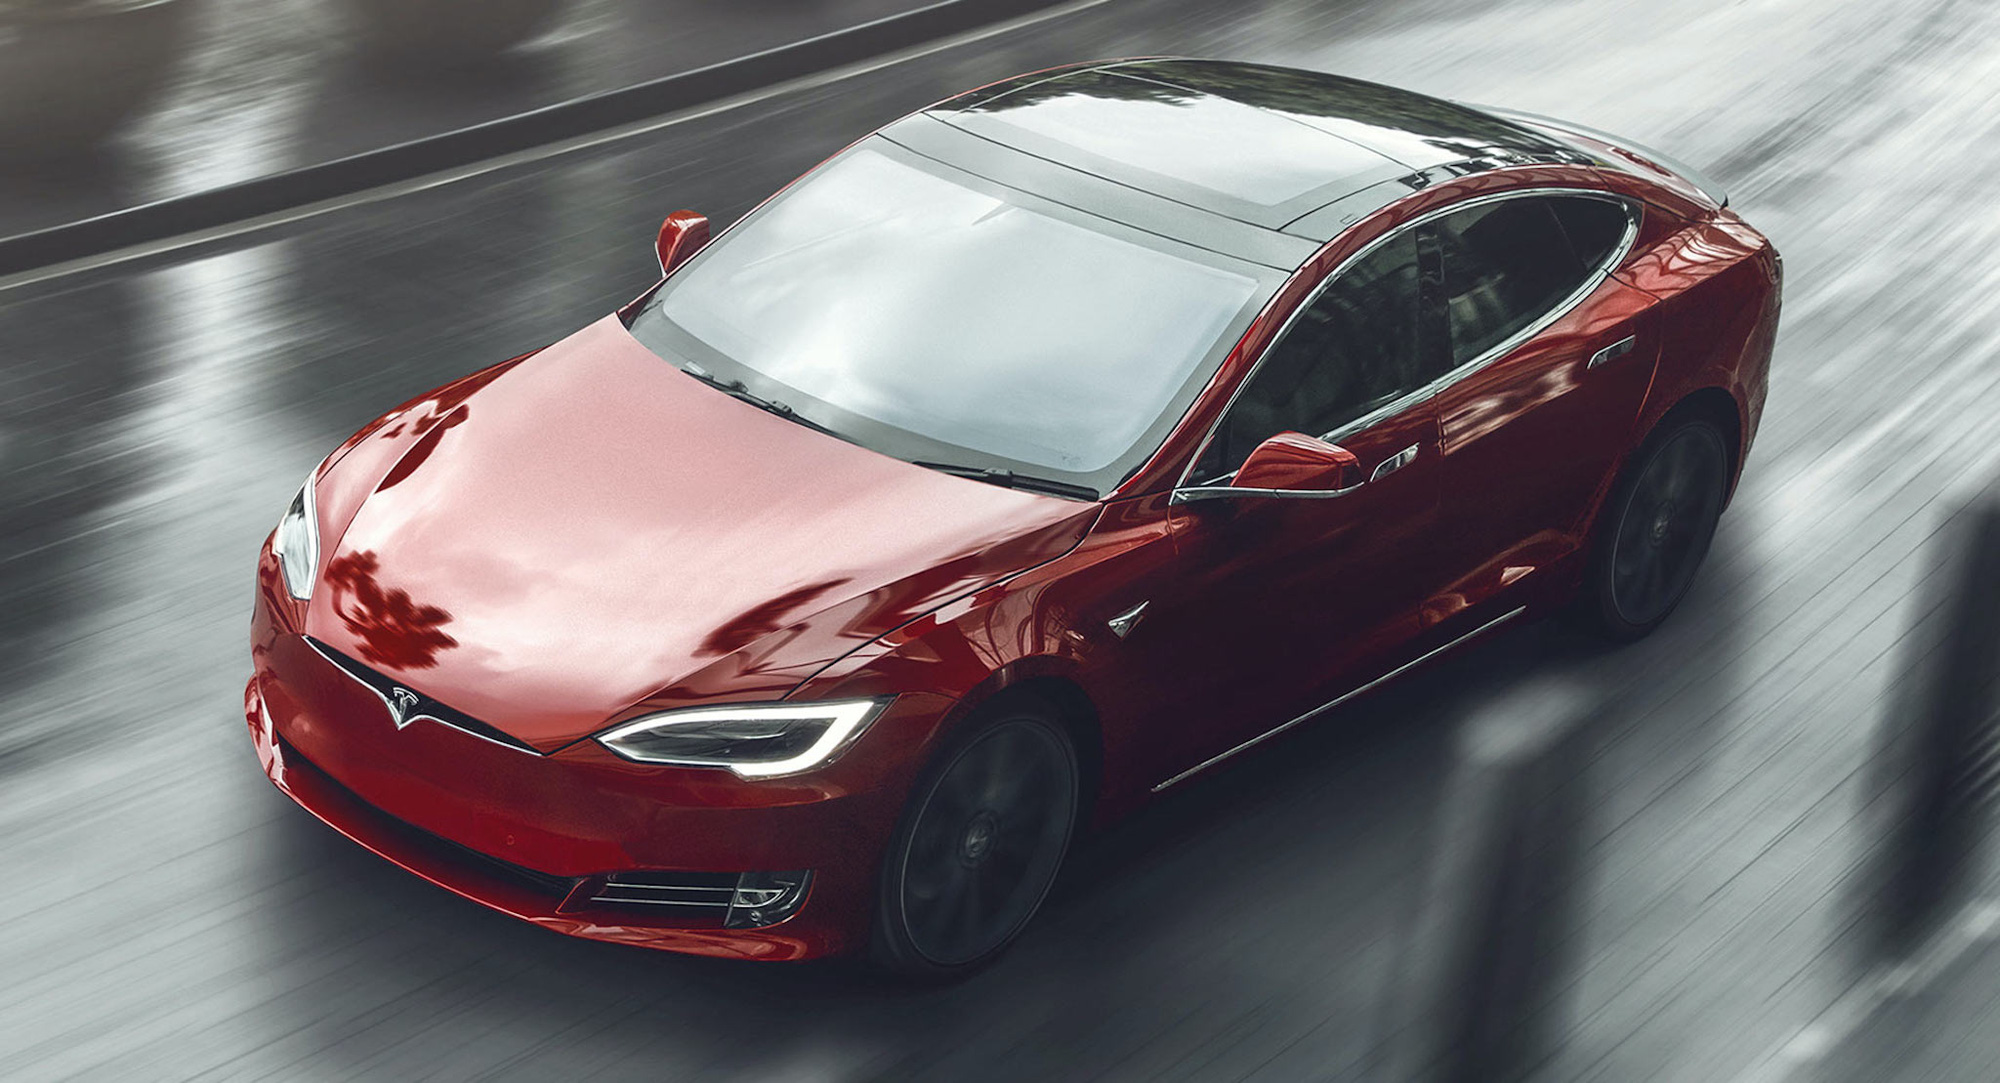 Giông tố đổ ập tới loạt nhà sản xuất, Tesla vững như kiềng ba chân - Ảnh 1.